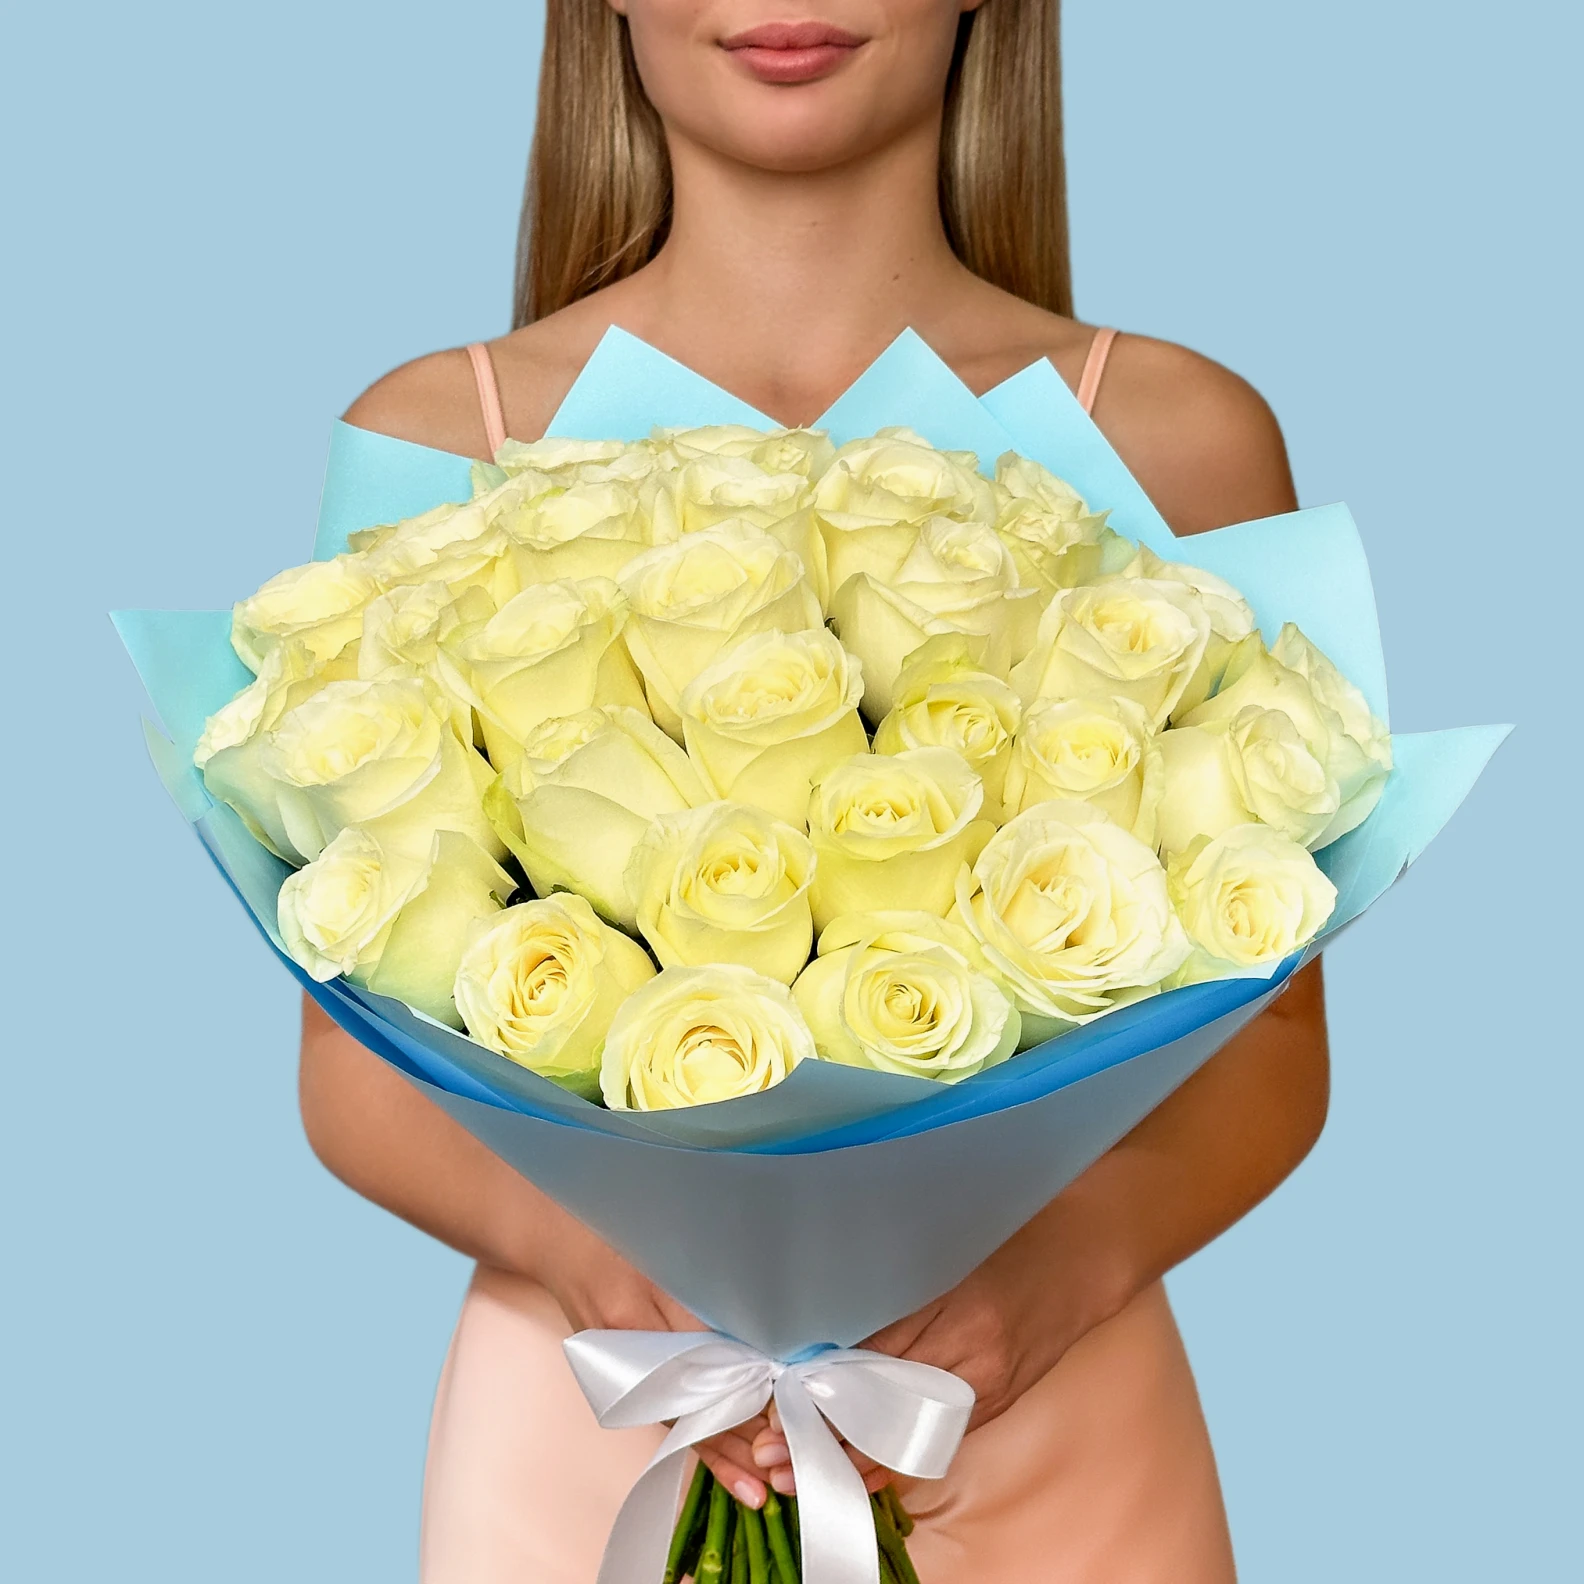 35 Premium White Roses - image №1